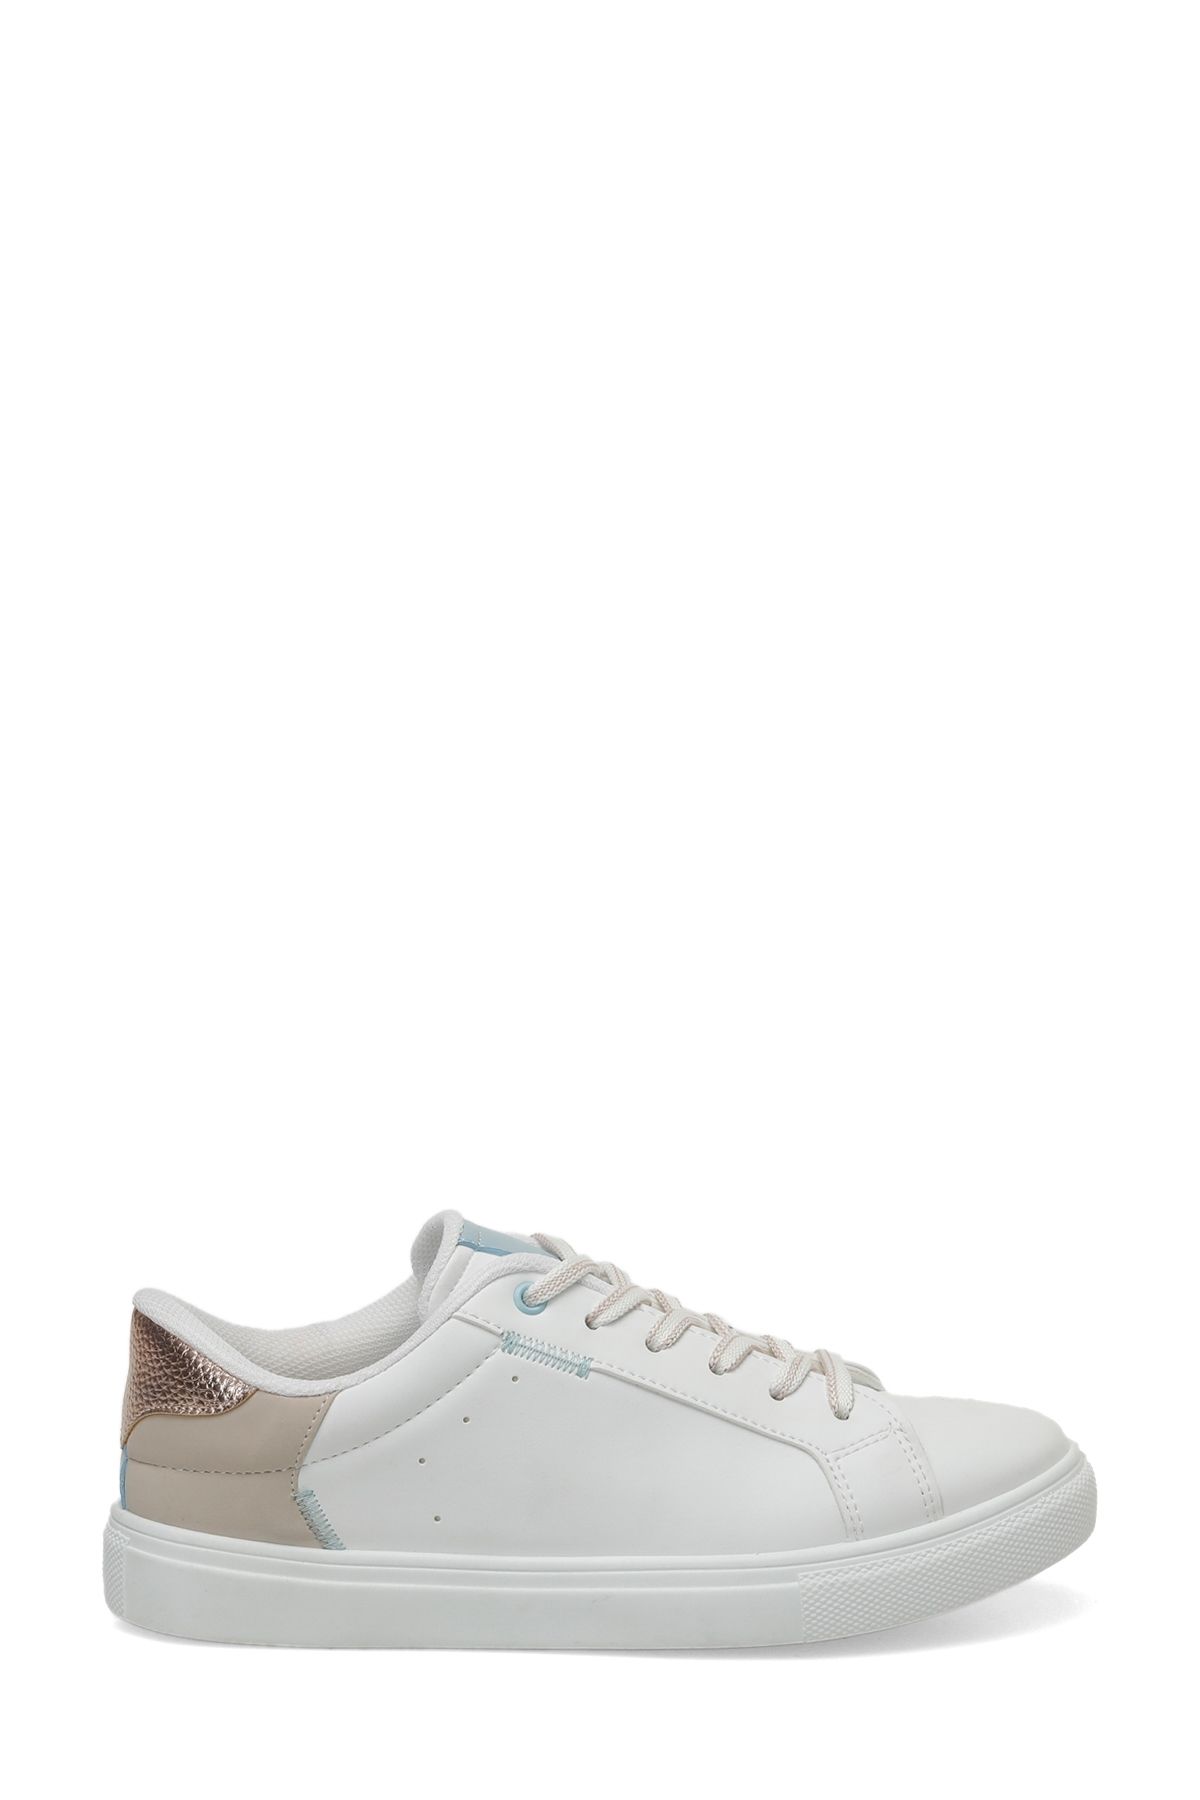 Polaris 323562.Z 4FX Beyaz Kadın Sneaker